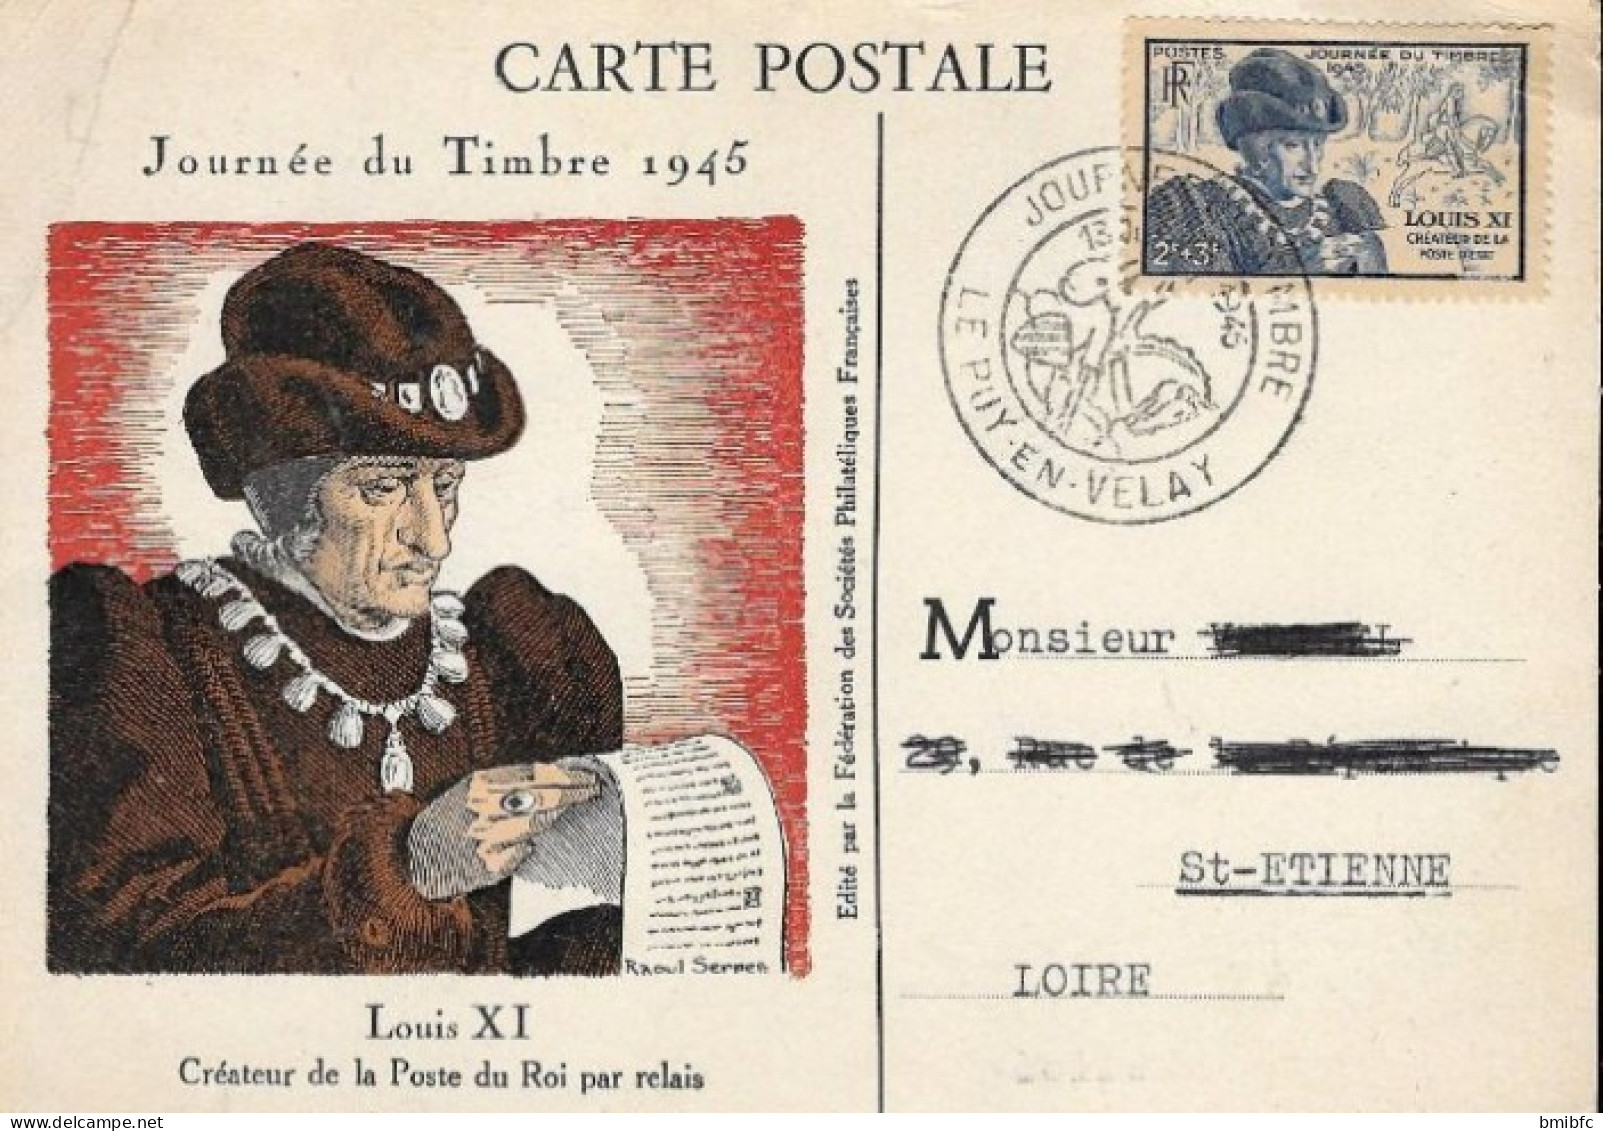 LOUIS XI JOURNÉE DU TIMBRE 1945 LE PUY EN VELAY - Commemorative Postmarks